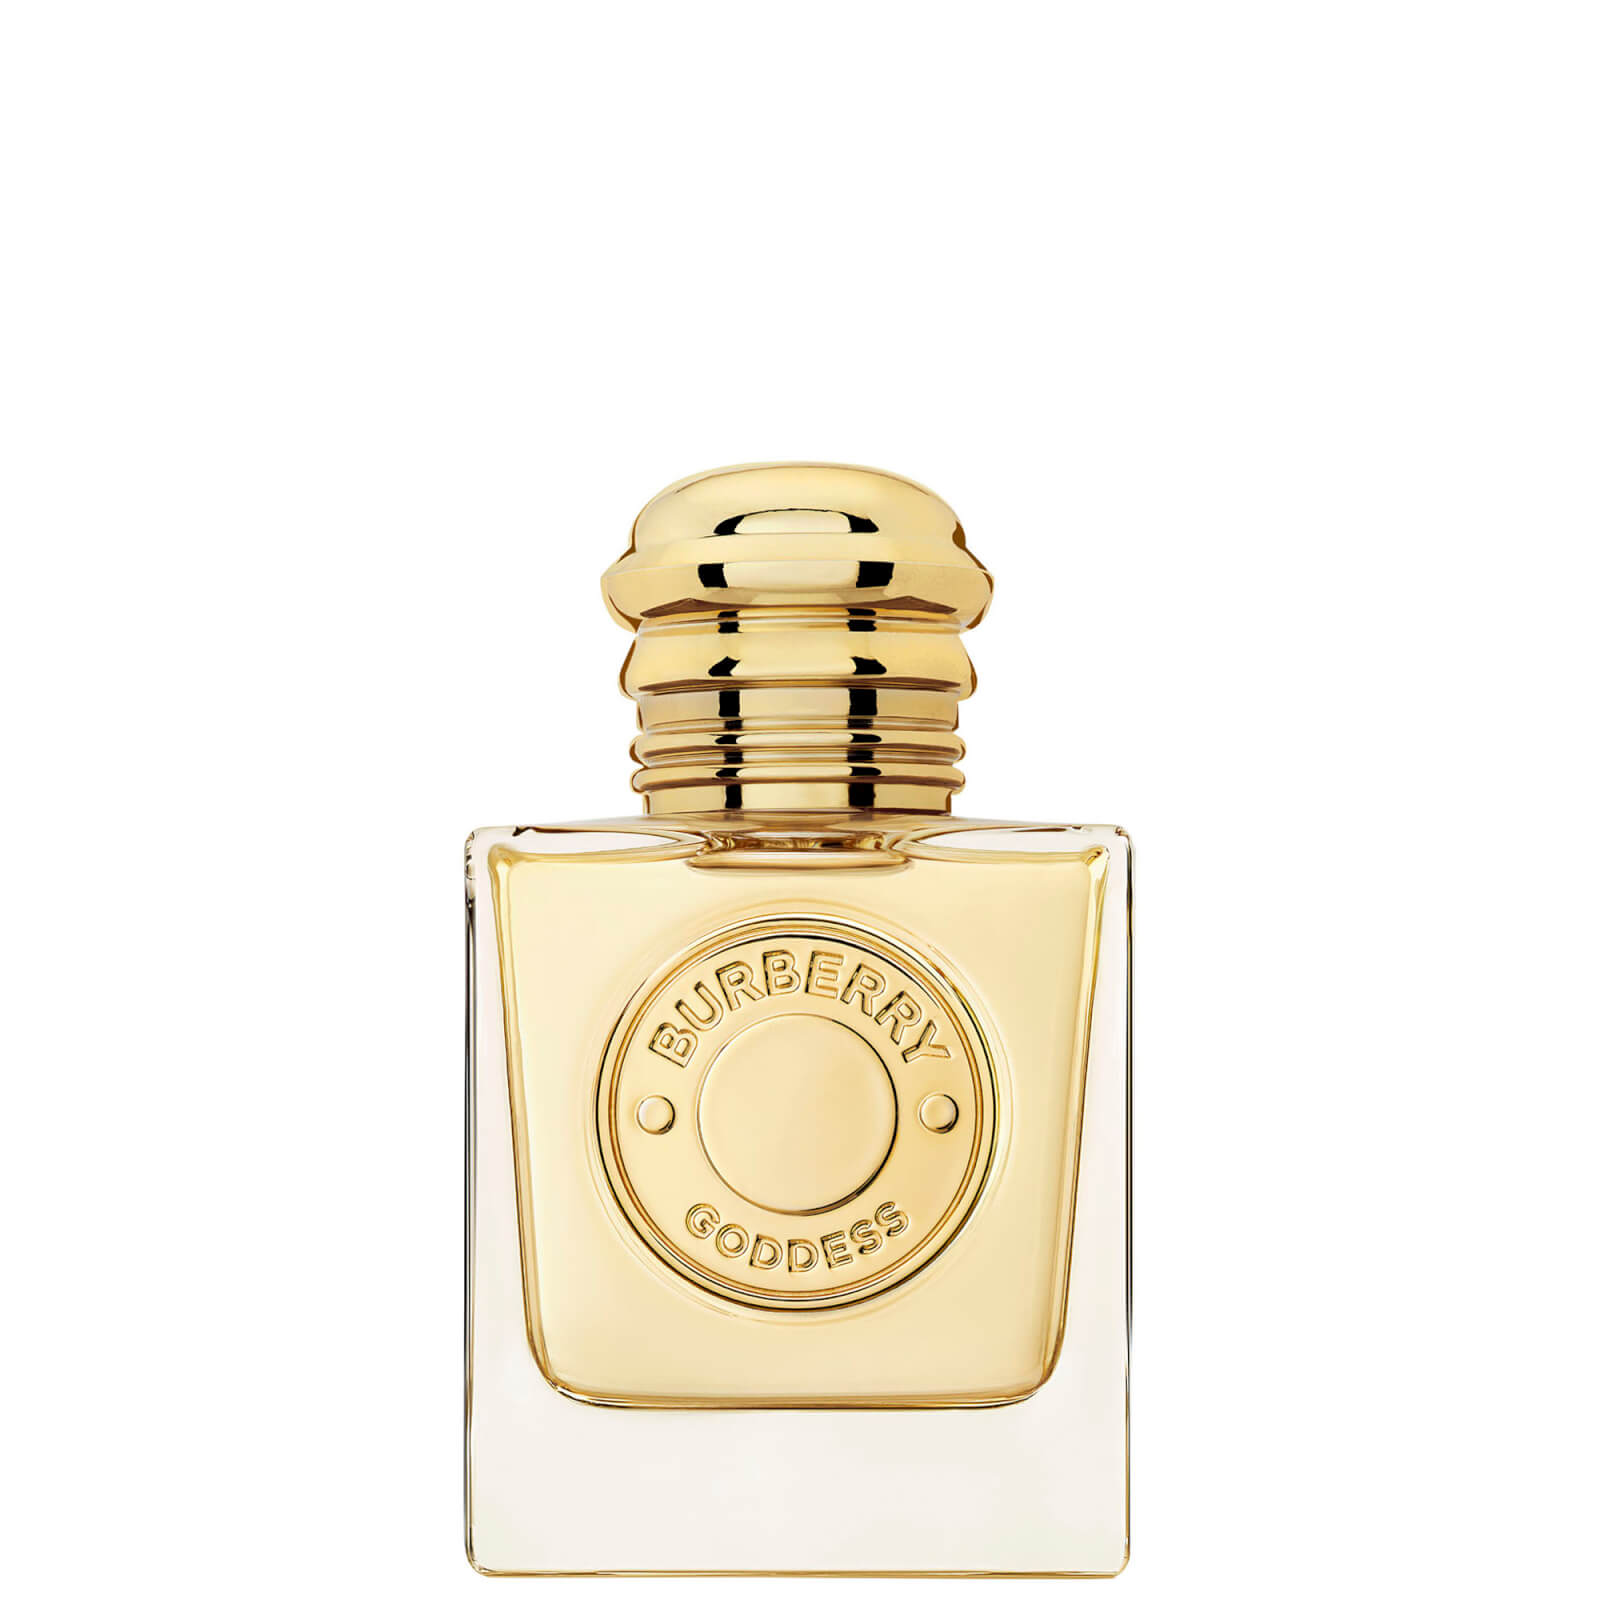 Photos - Women's Fragrance Burberry Goddess Eau de Parfum for Women 50ml 99350093275 